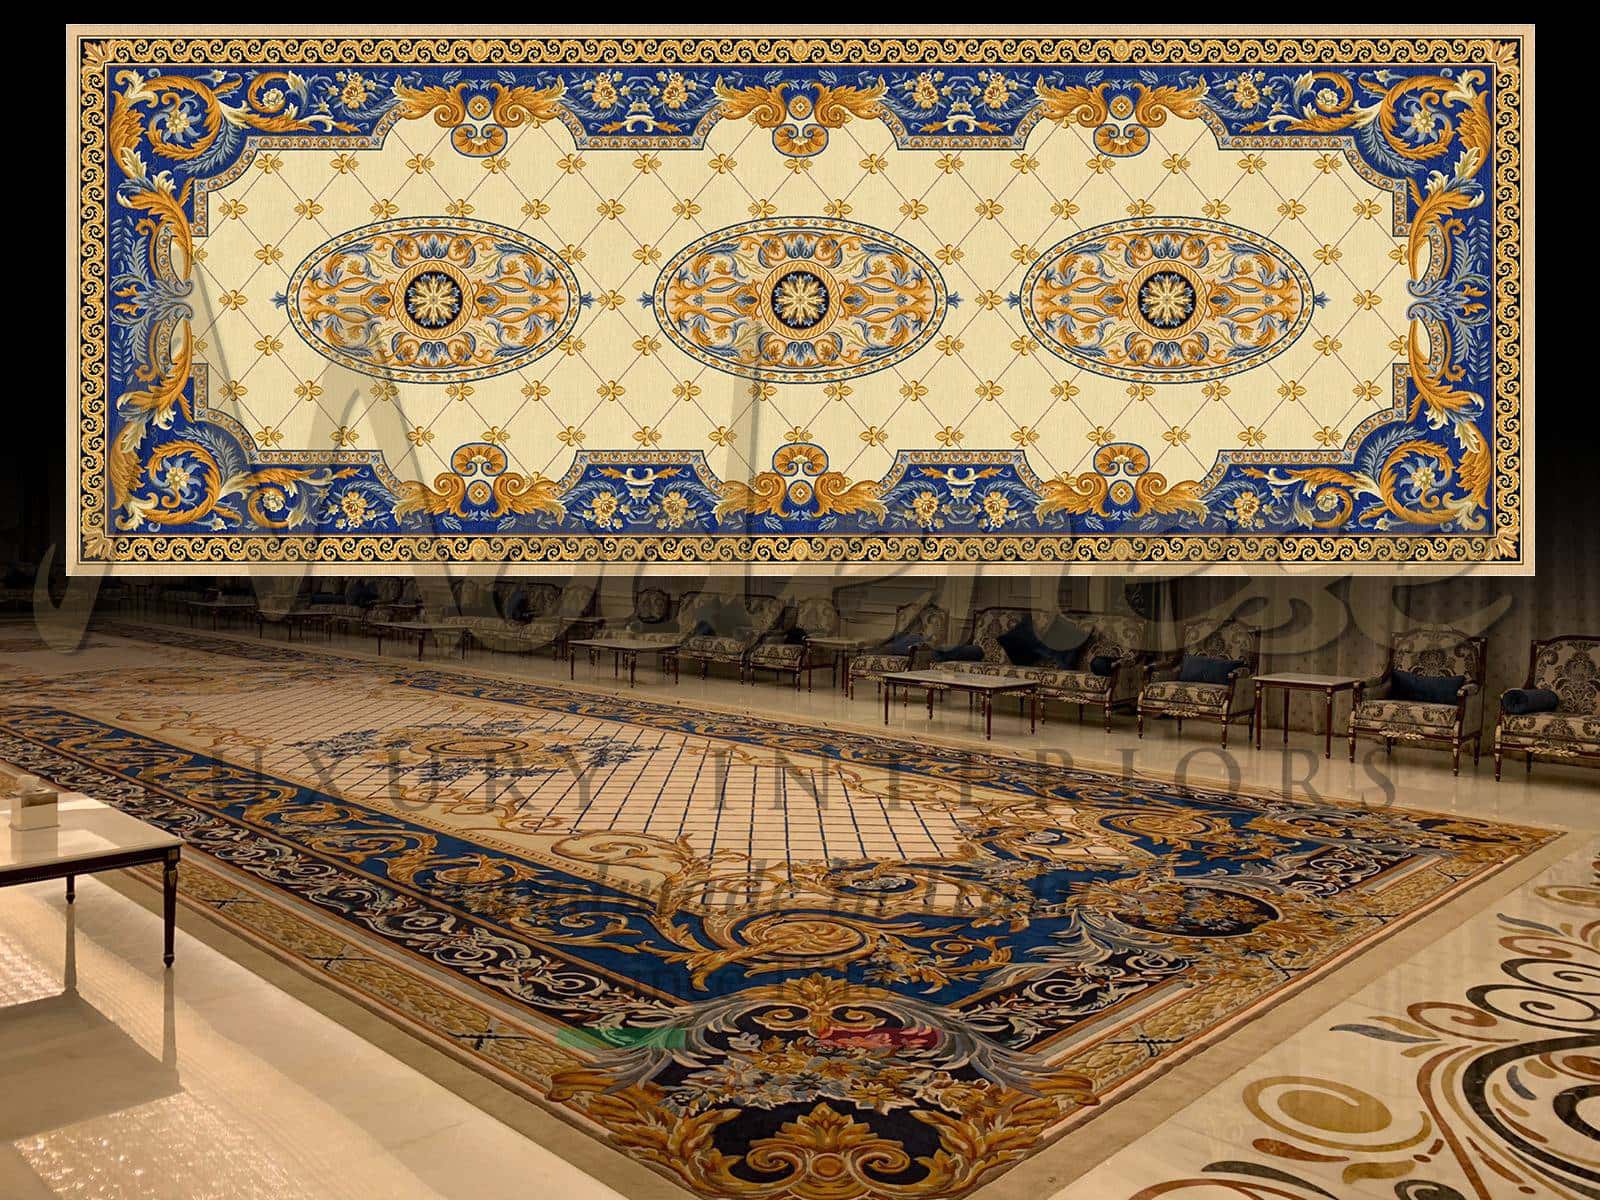 室内设计服务手工地毯奢华经典选择 意大利风格法式品味皇家独特定制顾问住宅项目家居装饰 永恒传统的维多利亚时代独特的精致手工地毯